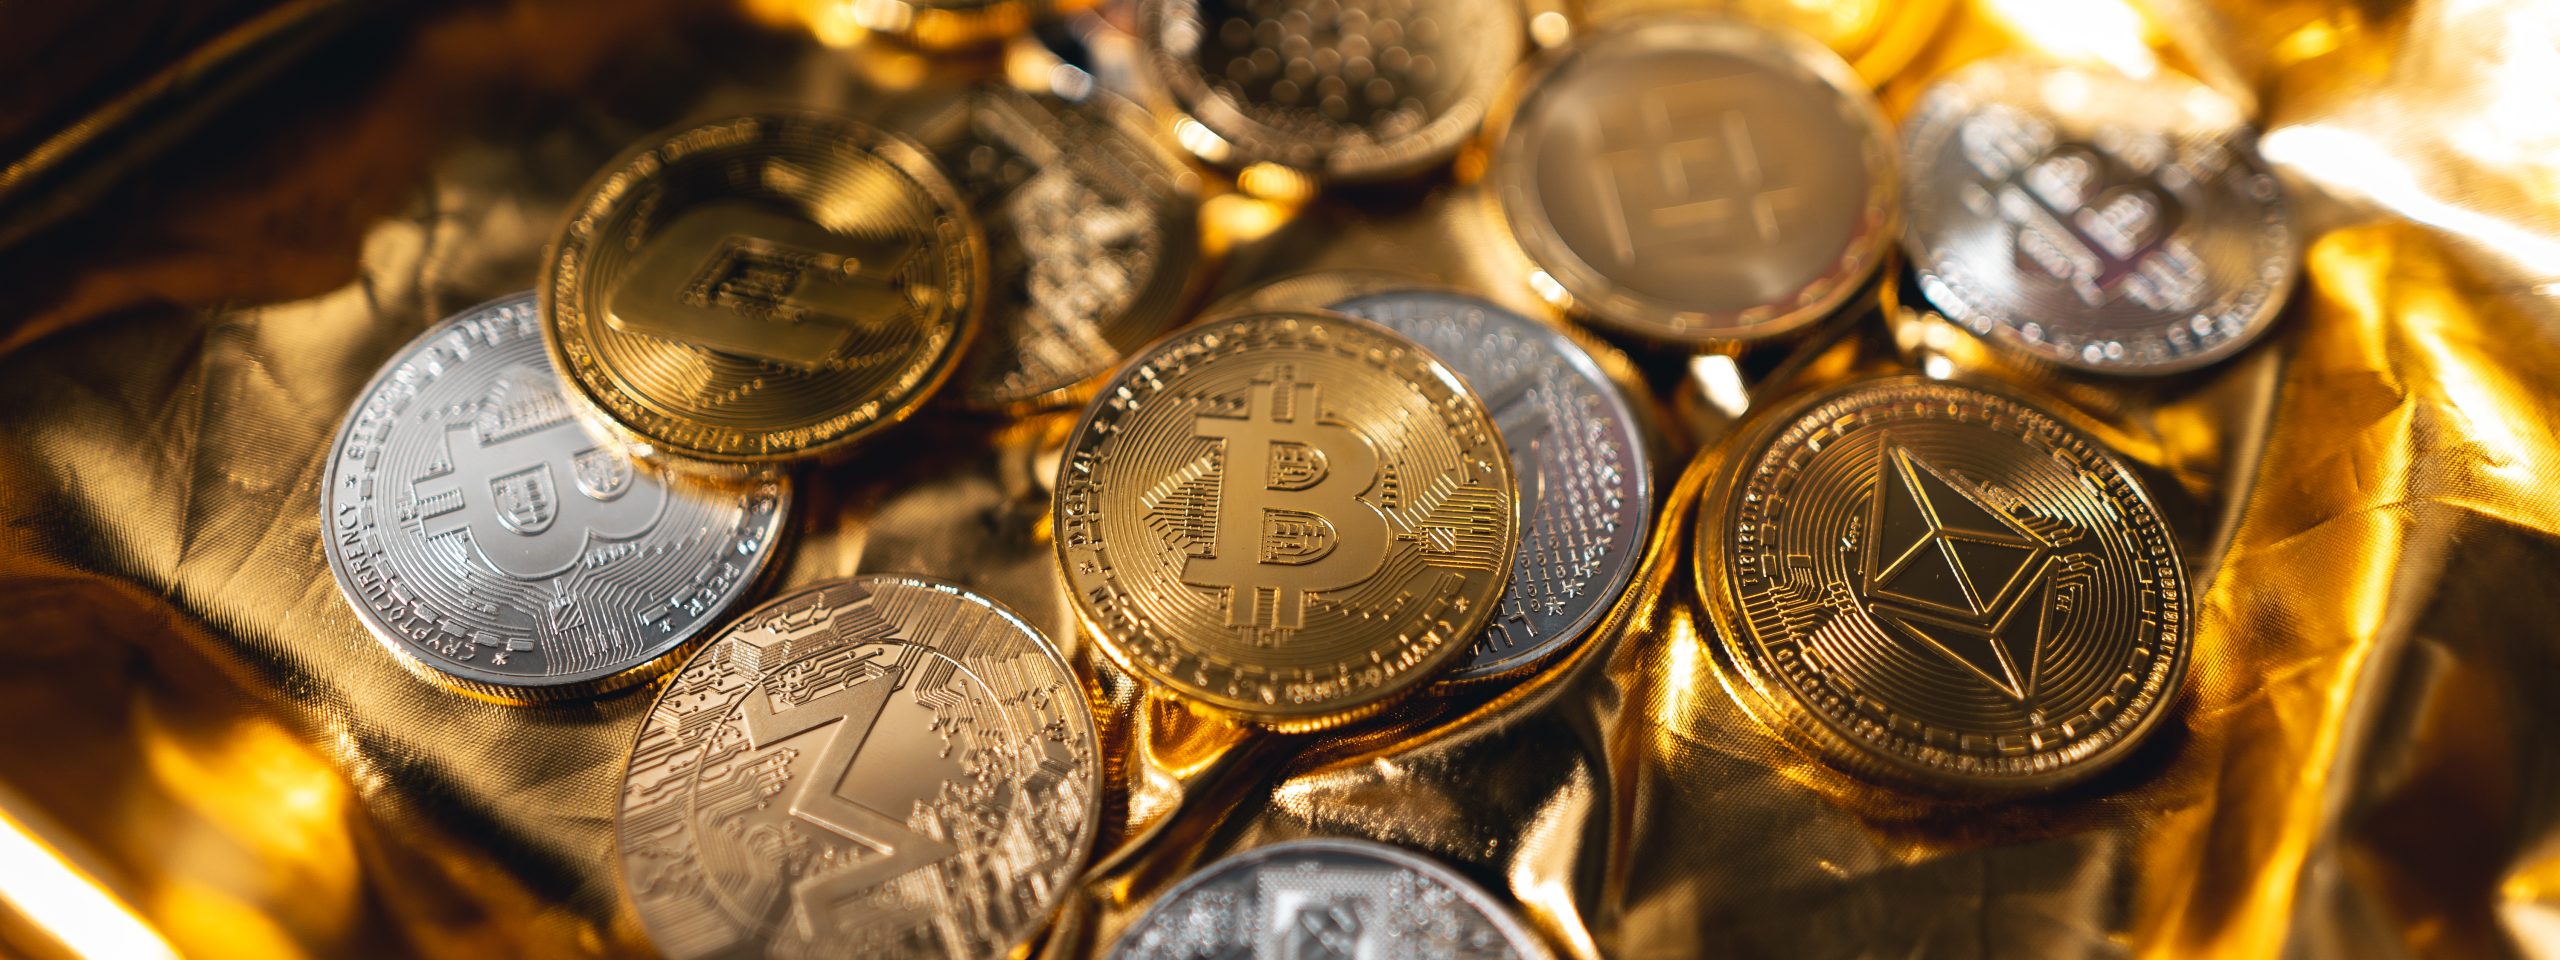 Γιατί οι τιμές των κρυπτονομισμάτων, όπως το Bitcoin, έπεσαν ξανά;